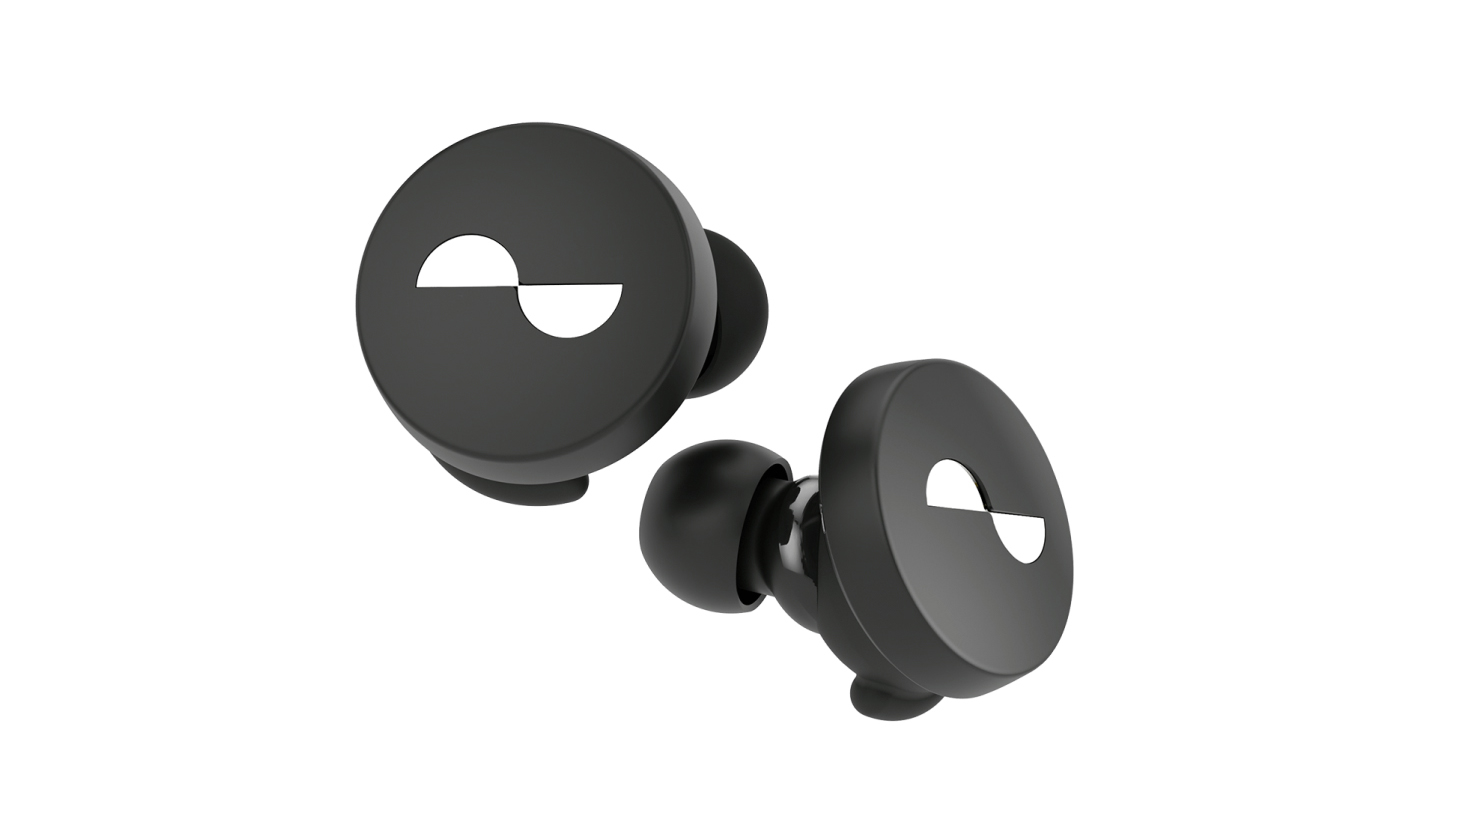 The Nuratrue true wireless earbuds in black wth a white logo.